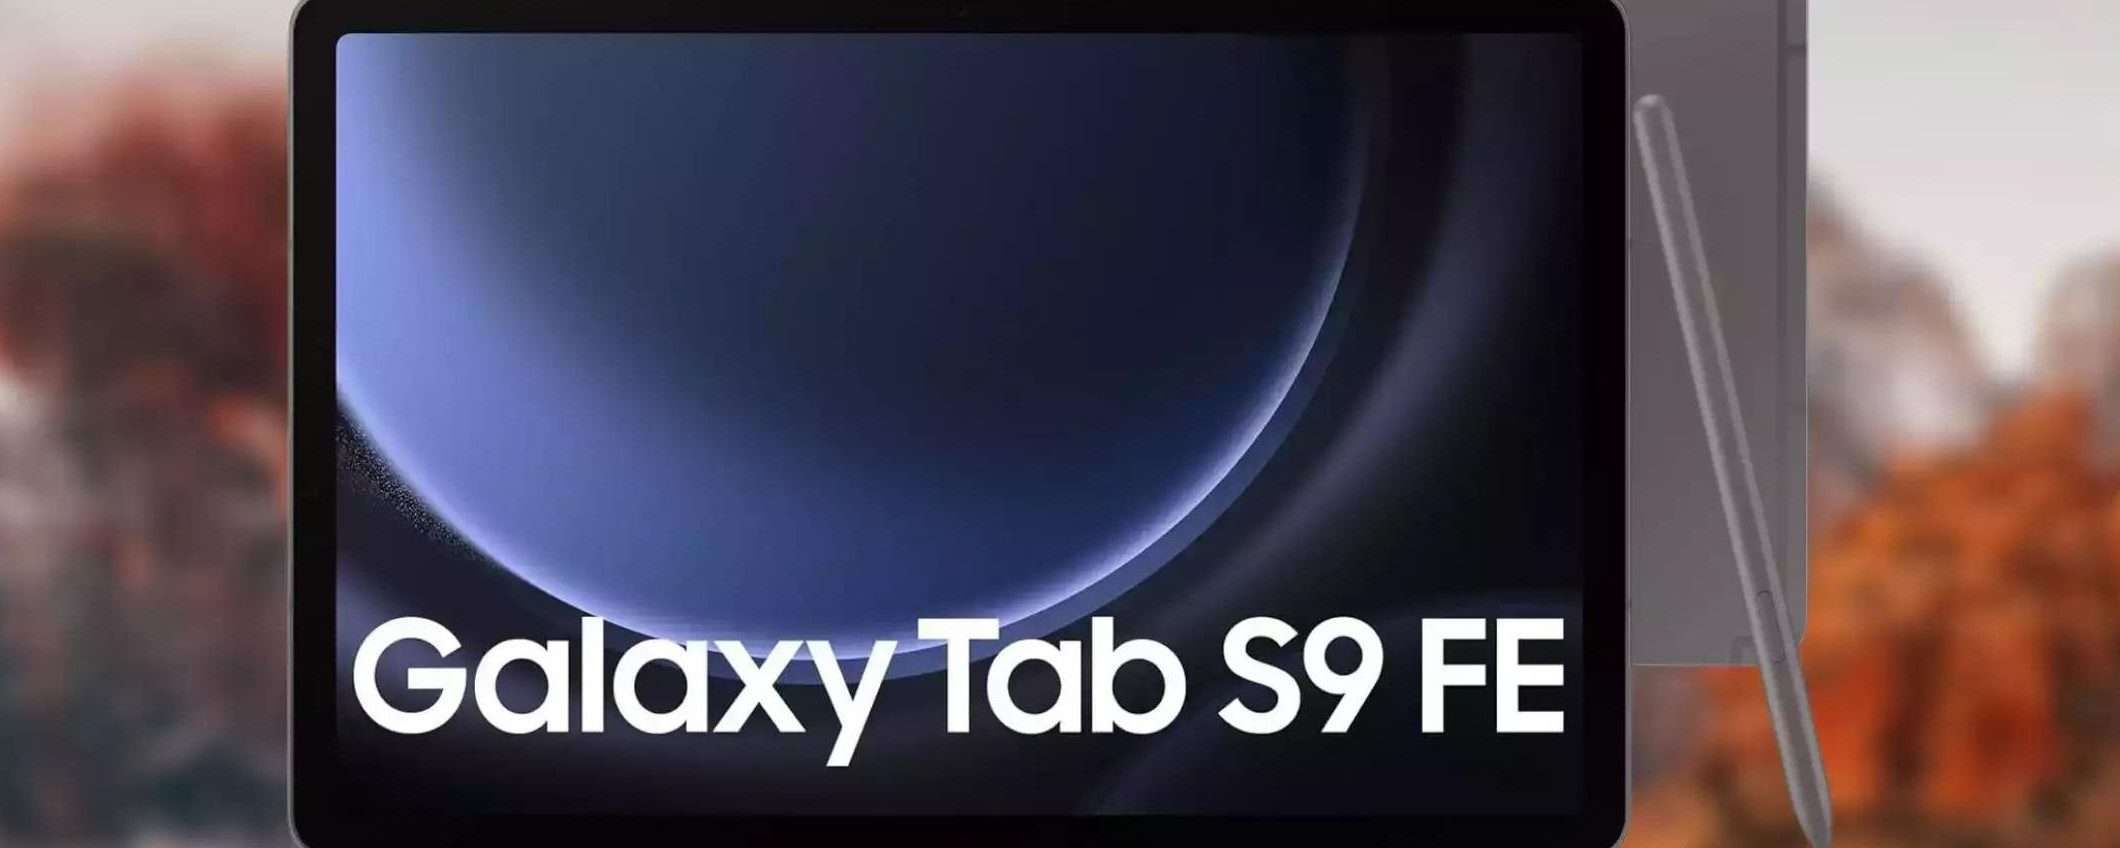 Samsung Galaxy Tab S9+ FE+: sconto FOLLE del 22% su Amazon, correte a prenderlo